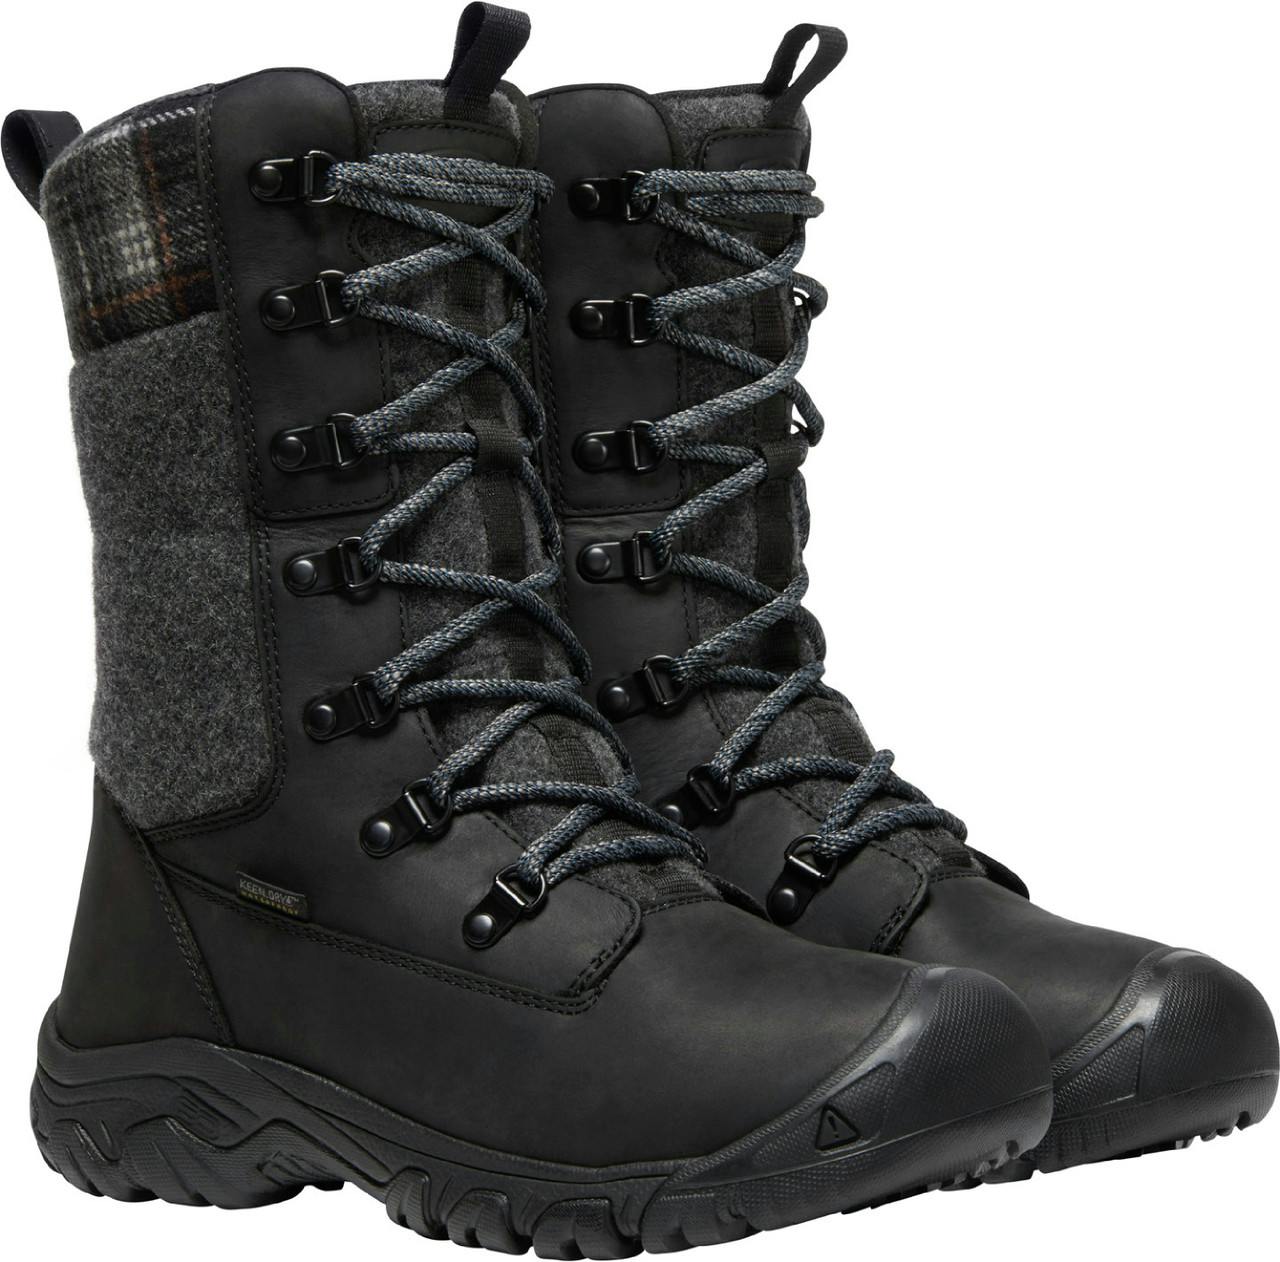 Greta Tall Waterproof Winter Boots Black/Black Plaid